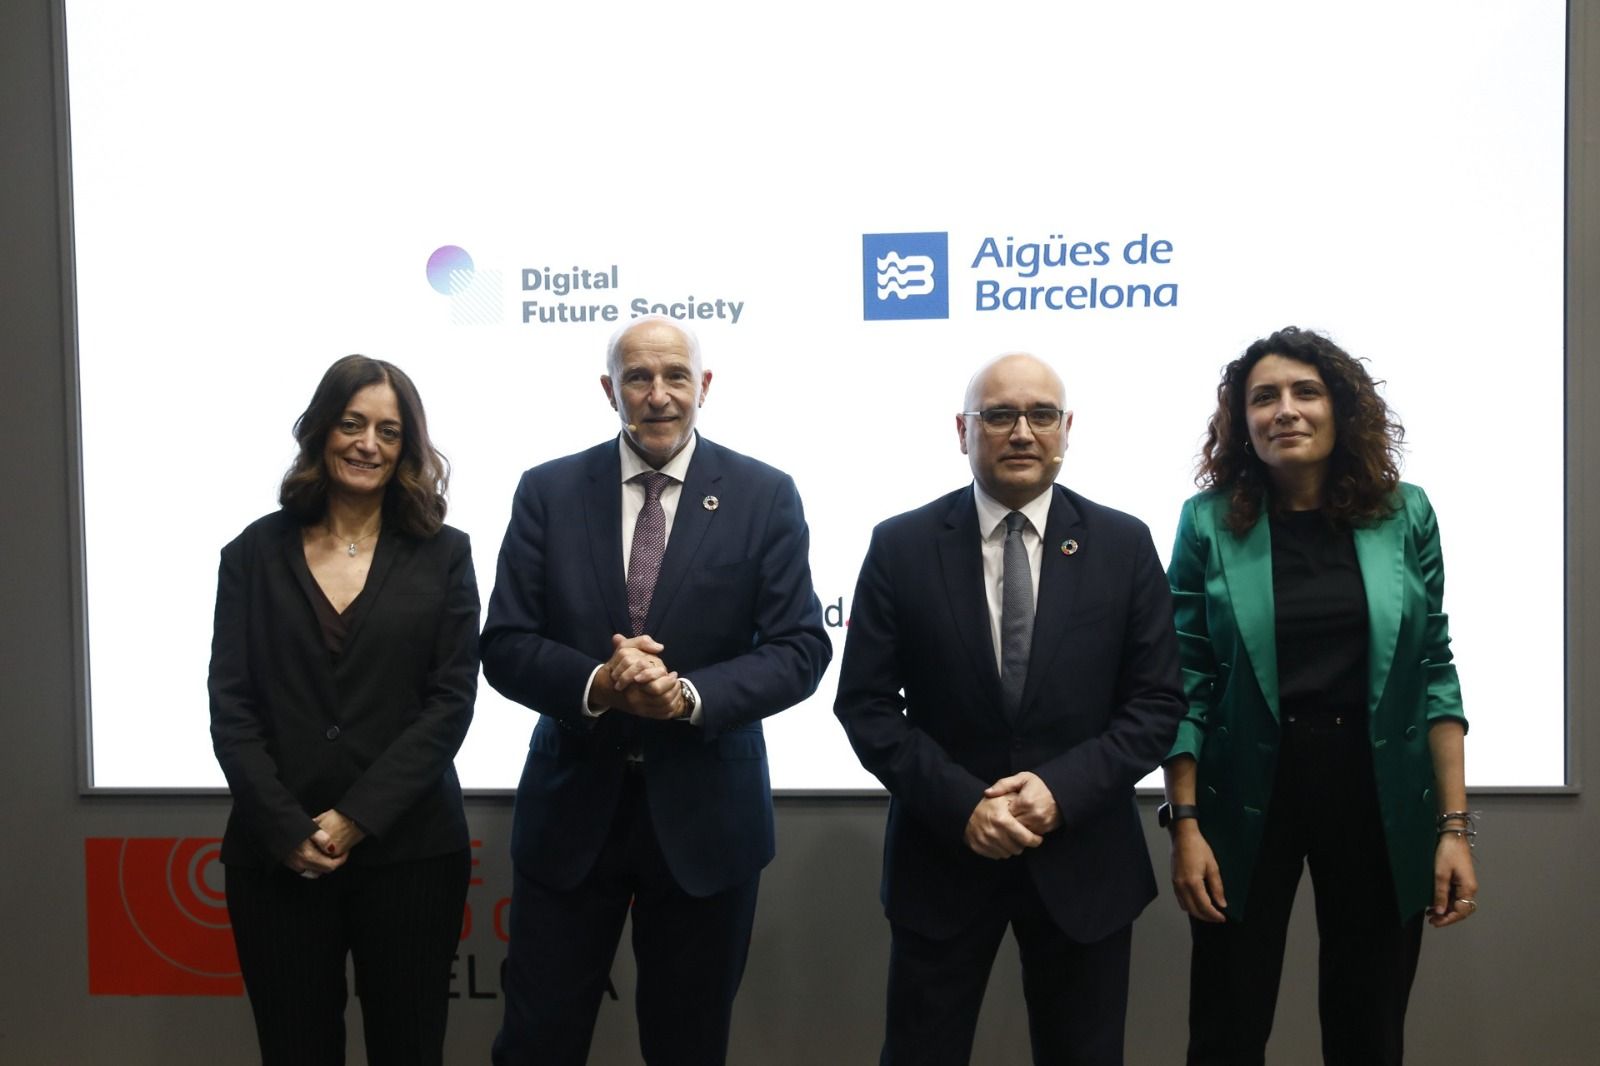 Los firmantes del acuerdo entre Aigües de Barcelona y Digital Future Society.